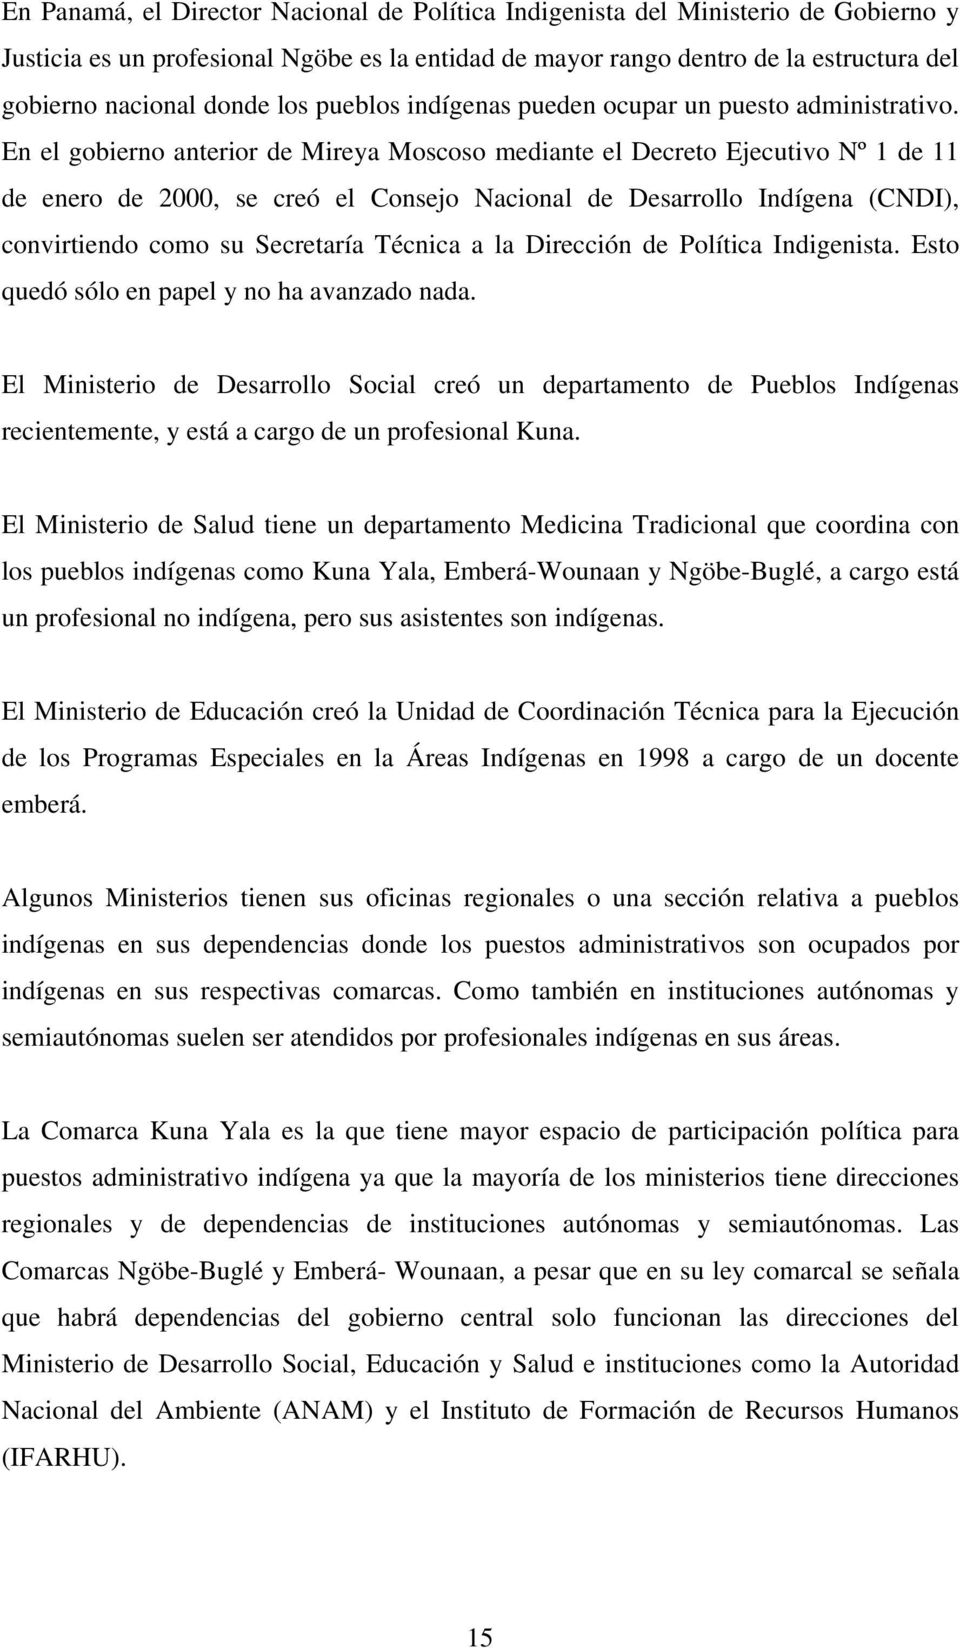 En el gobierno anterior de Mireya Moscoso mediante el Decreto Ejecutivo Nº 1 de 11 de enero de 2000, se creó el Consejo Nacional de Desarrollo Indígena (CNDI), convirtiendo como su Secretaría Técnica